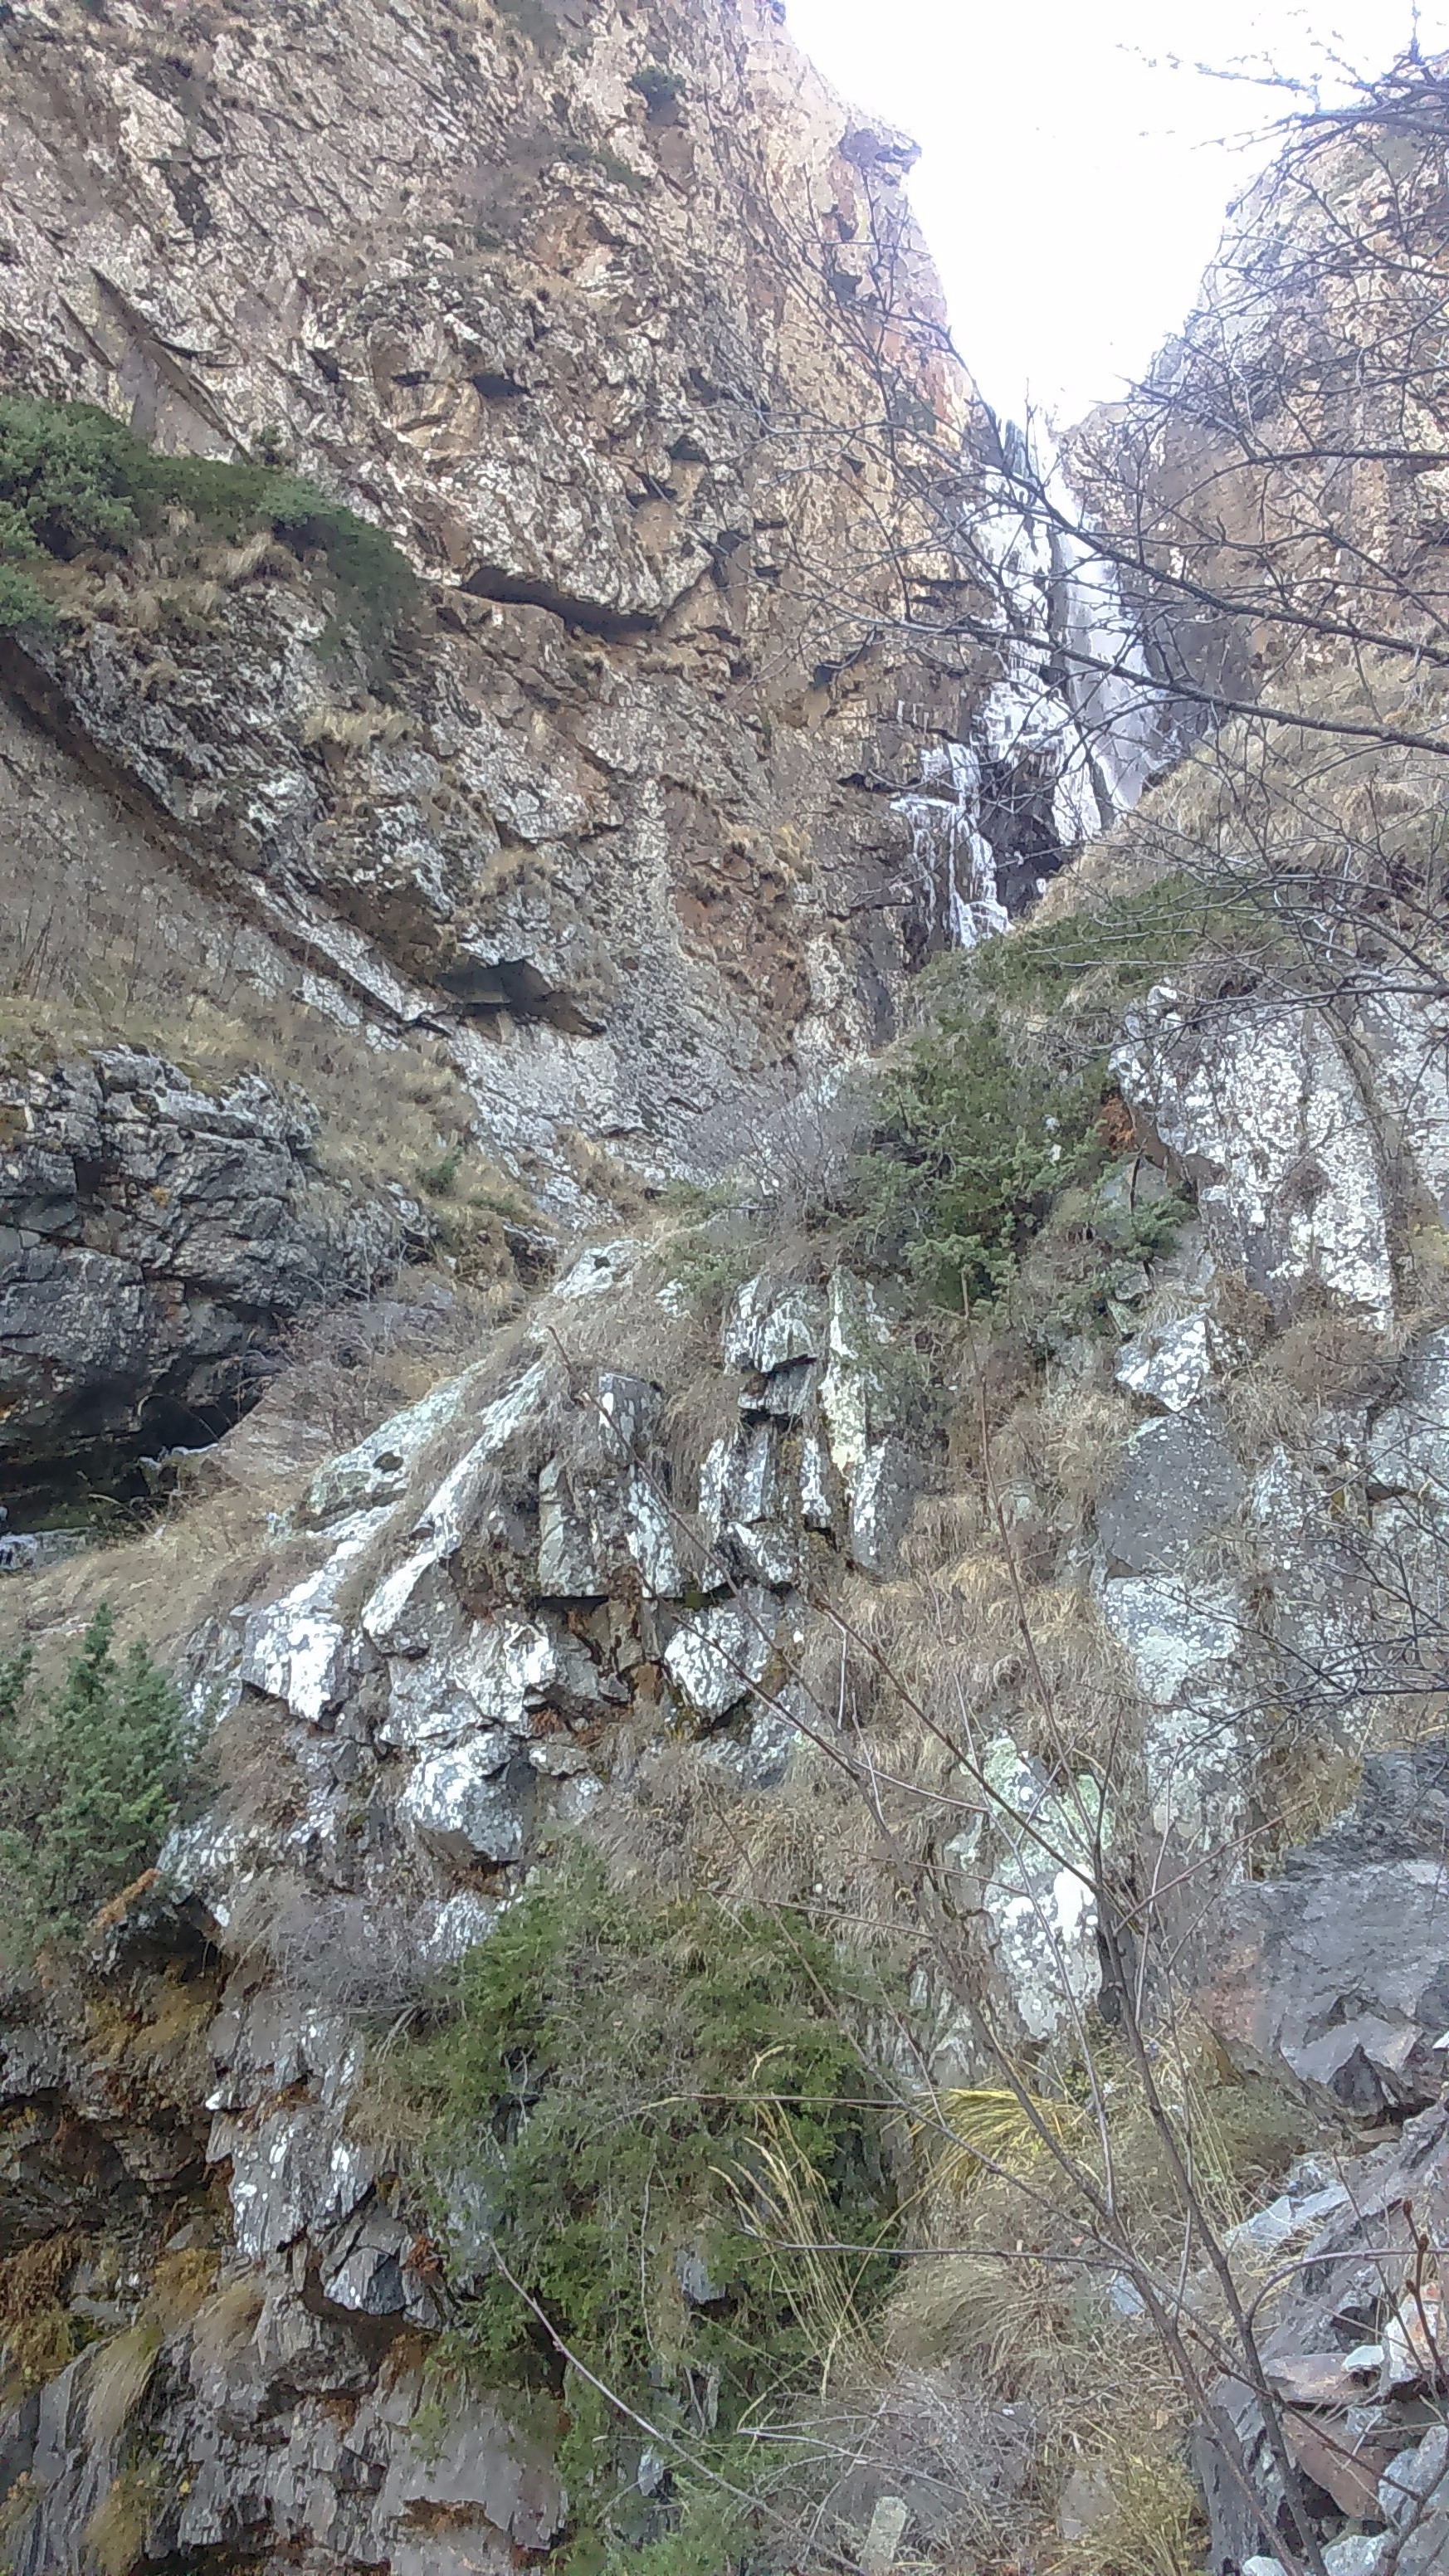 Водопад Гвелети, Дарьяльское ущелье